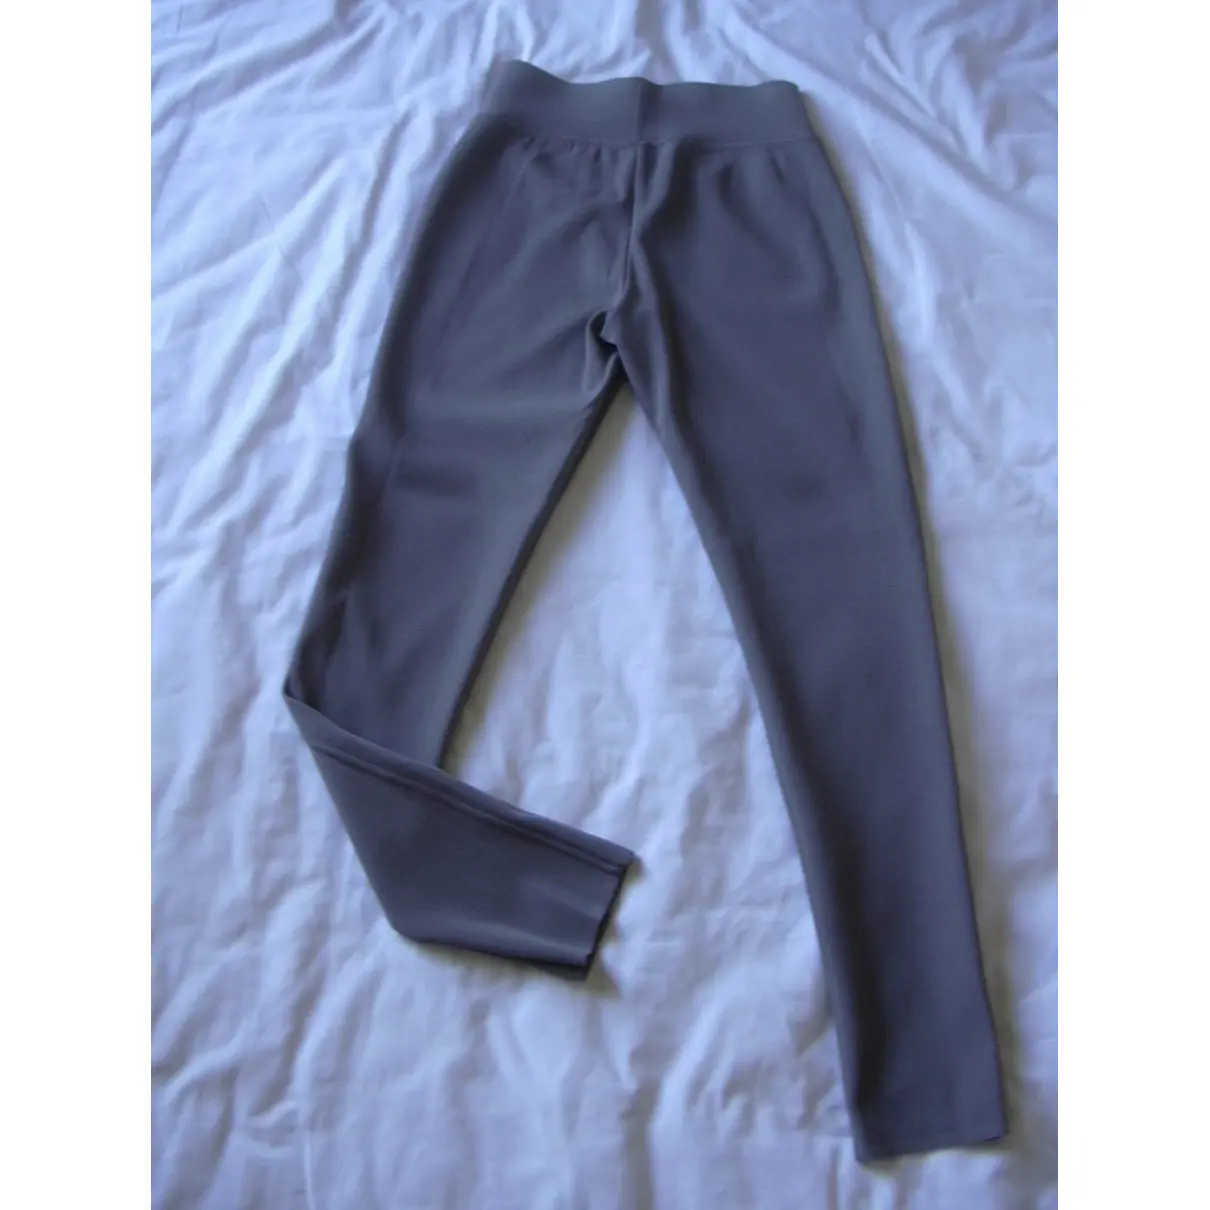 Buy Paul & Joe Grey Viscose Trousers online